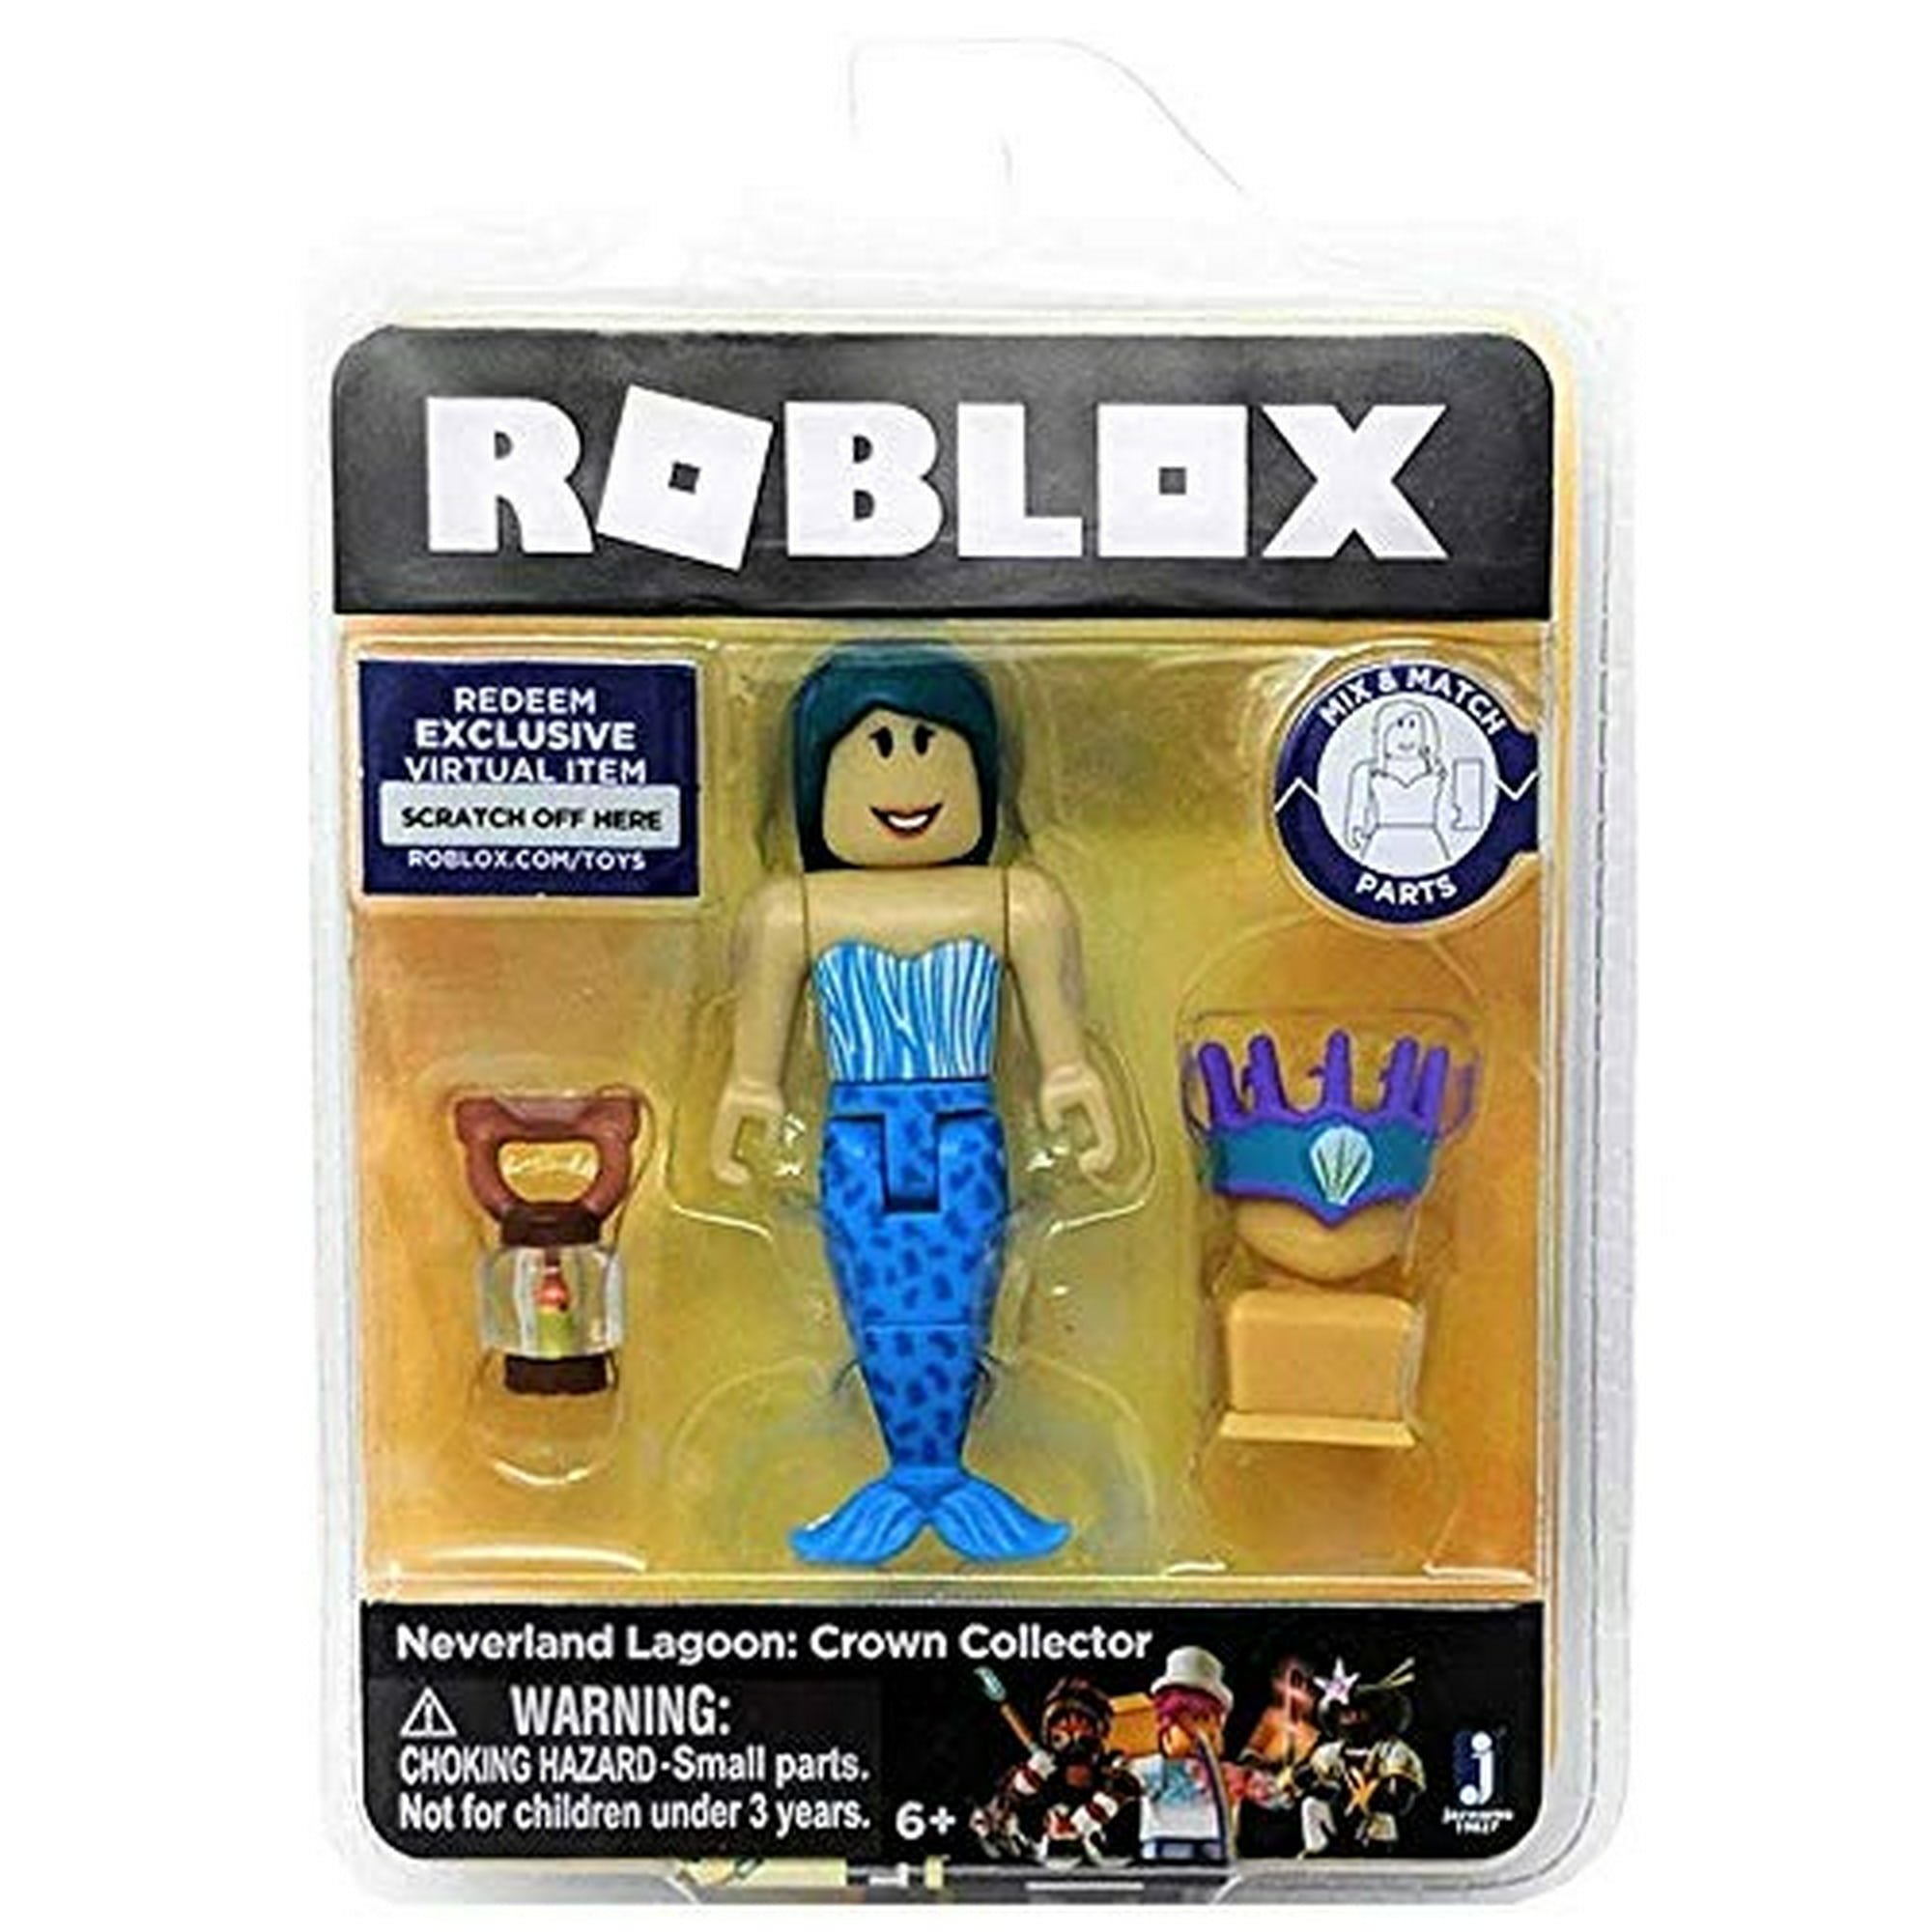  Colección Roblox Avatar Shop Series : Juguetes y Juegos